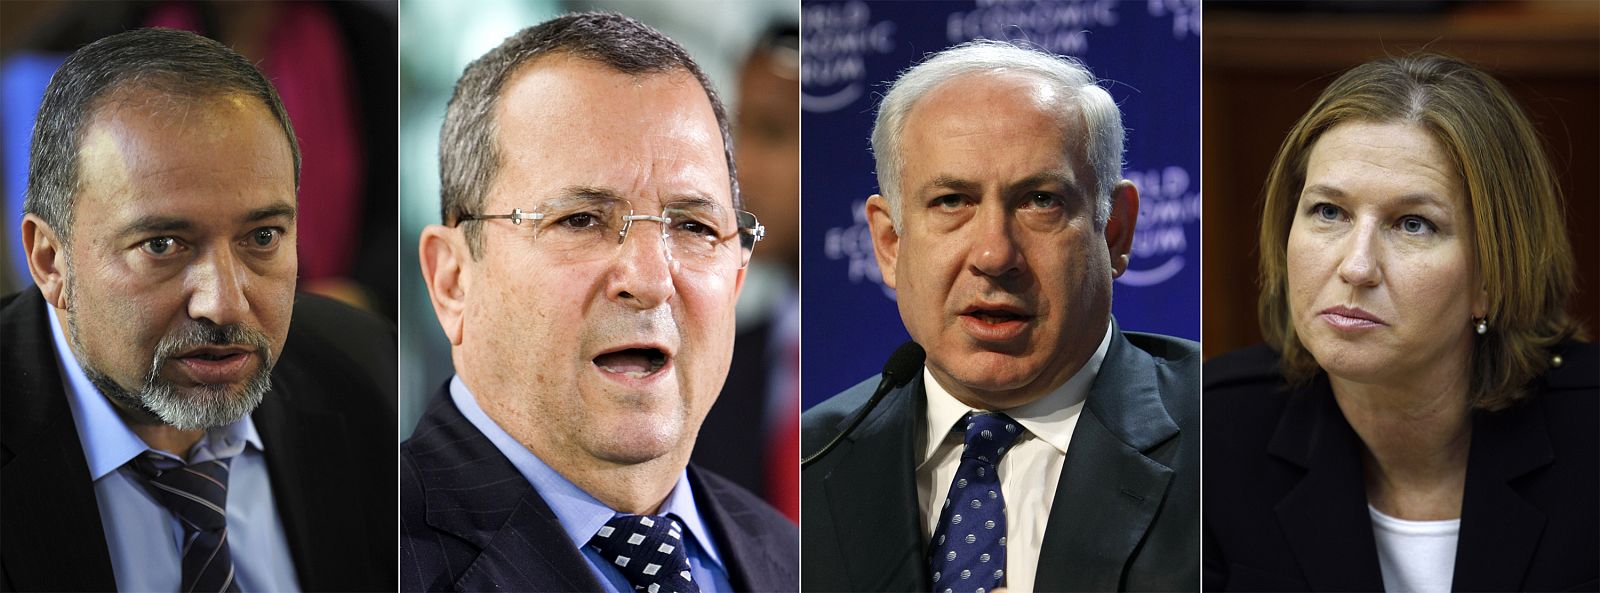 De izquierda a derecha, Avigdor Lieberman, Ehud Barak, Benjamin Netanyahu y Tzipi Livni, principales candidatos en las elecciones israelíes.